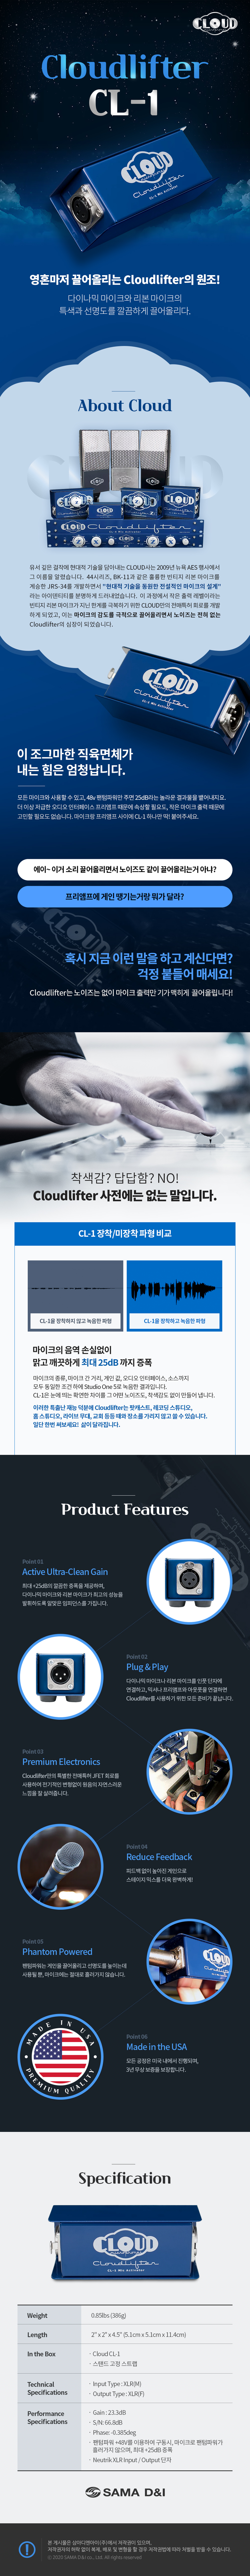 cloudlifter_CL-1-MAIN_105833.jpg